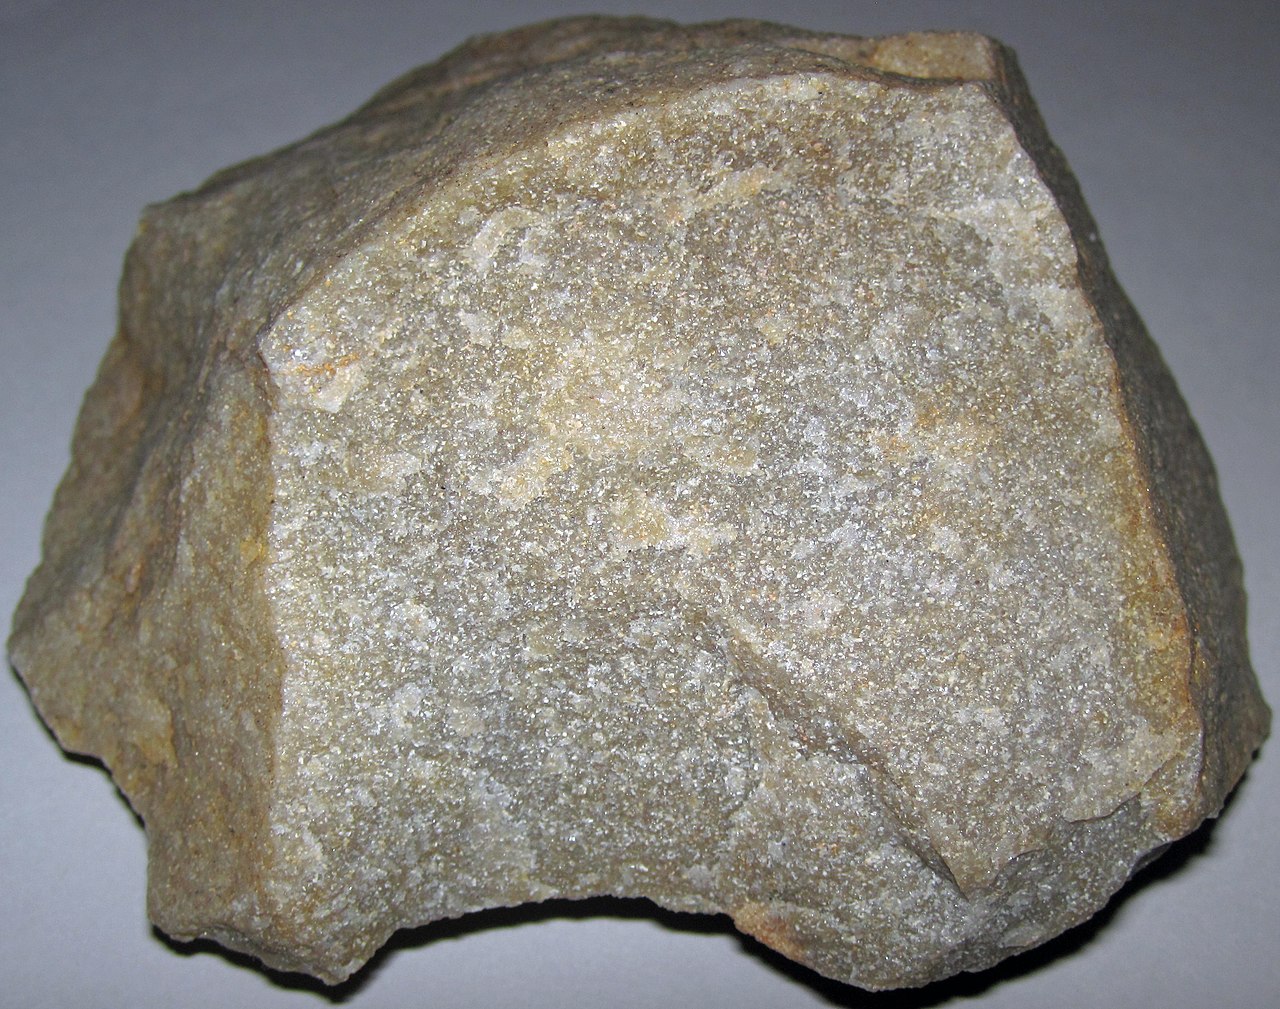 types metamorphic rocks